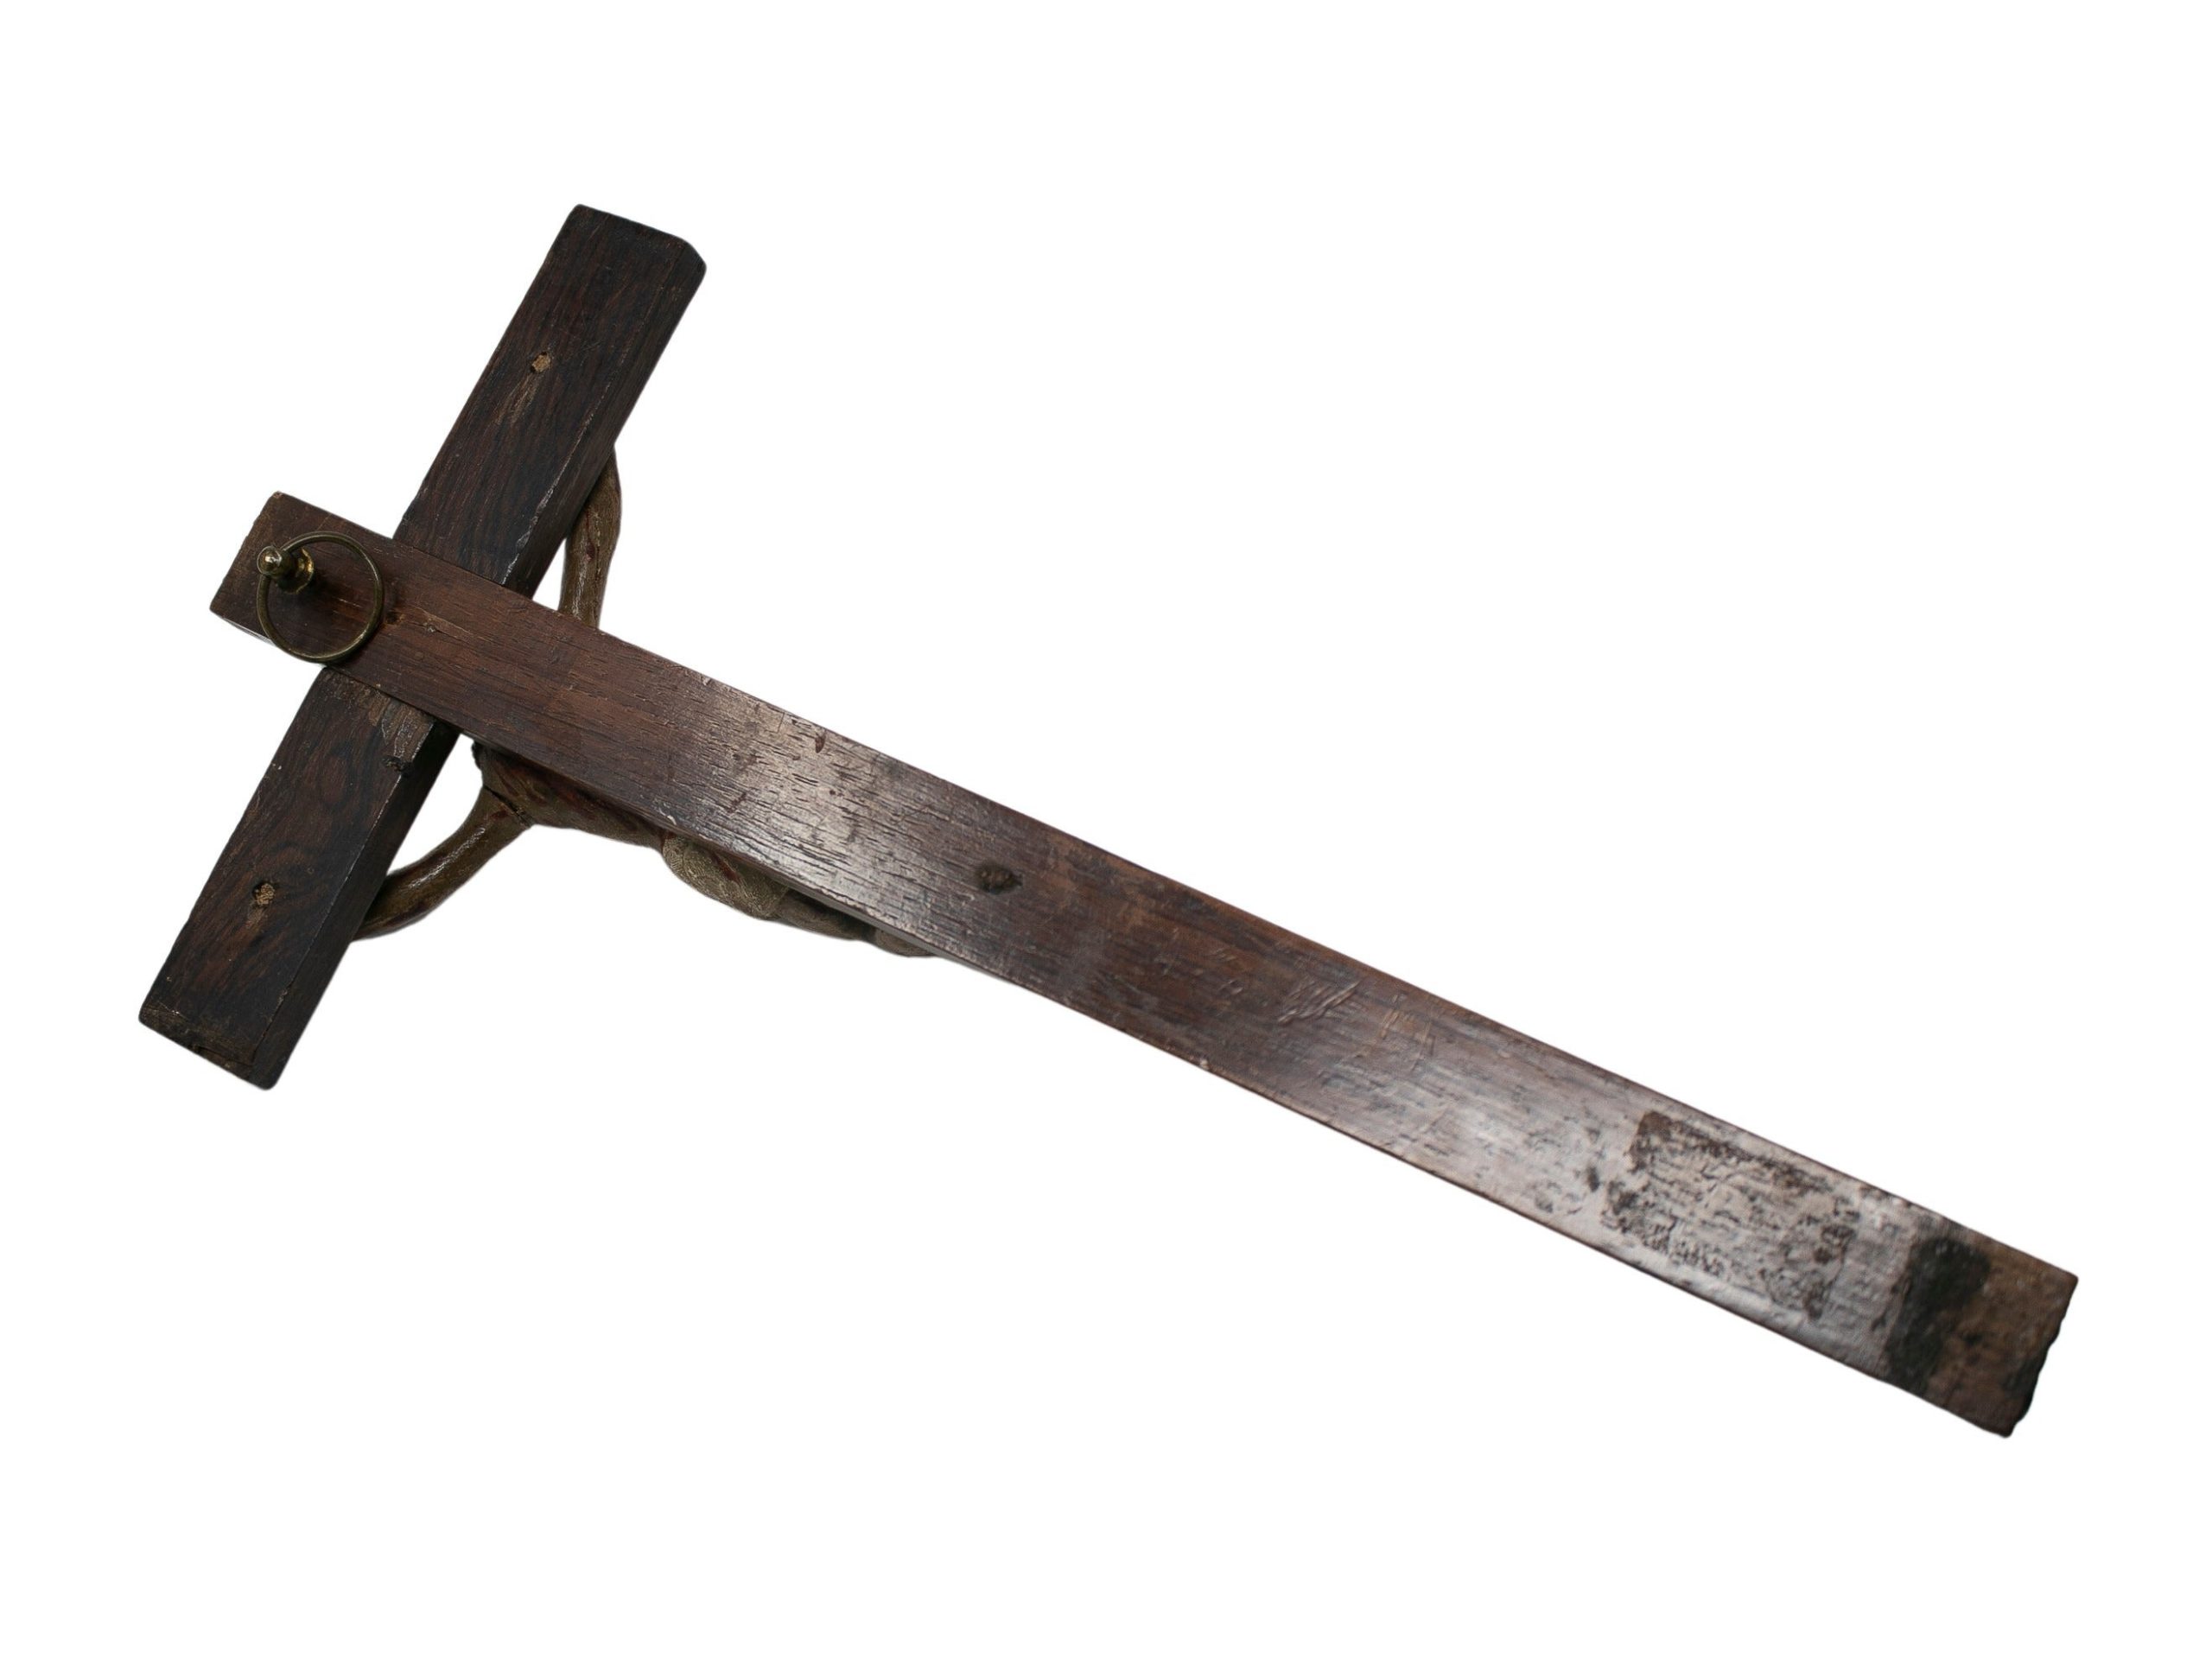 Escultura de Madera en Forma de Crucifijo, del Siglo XVII